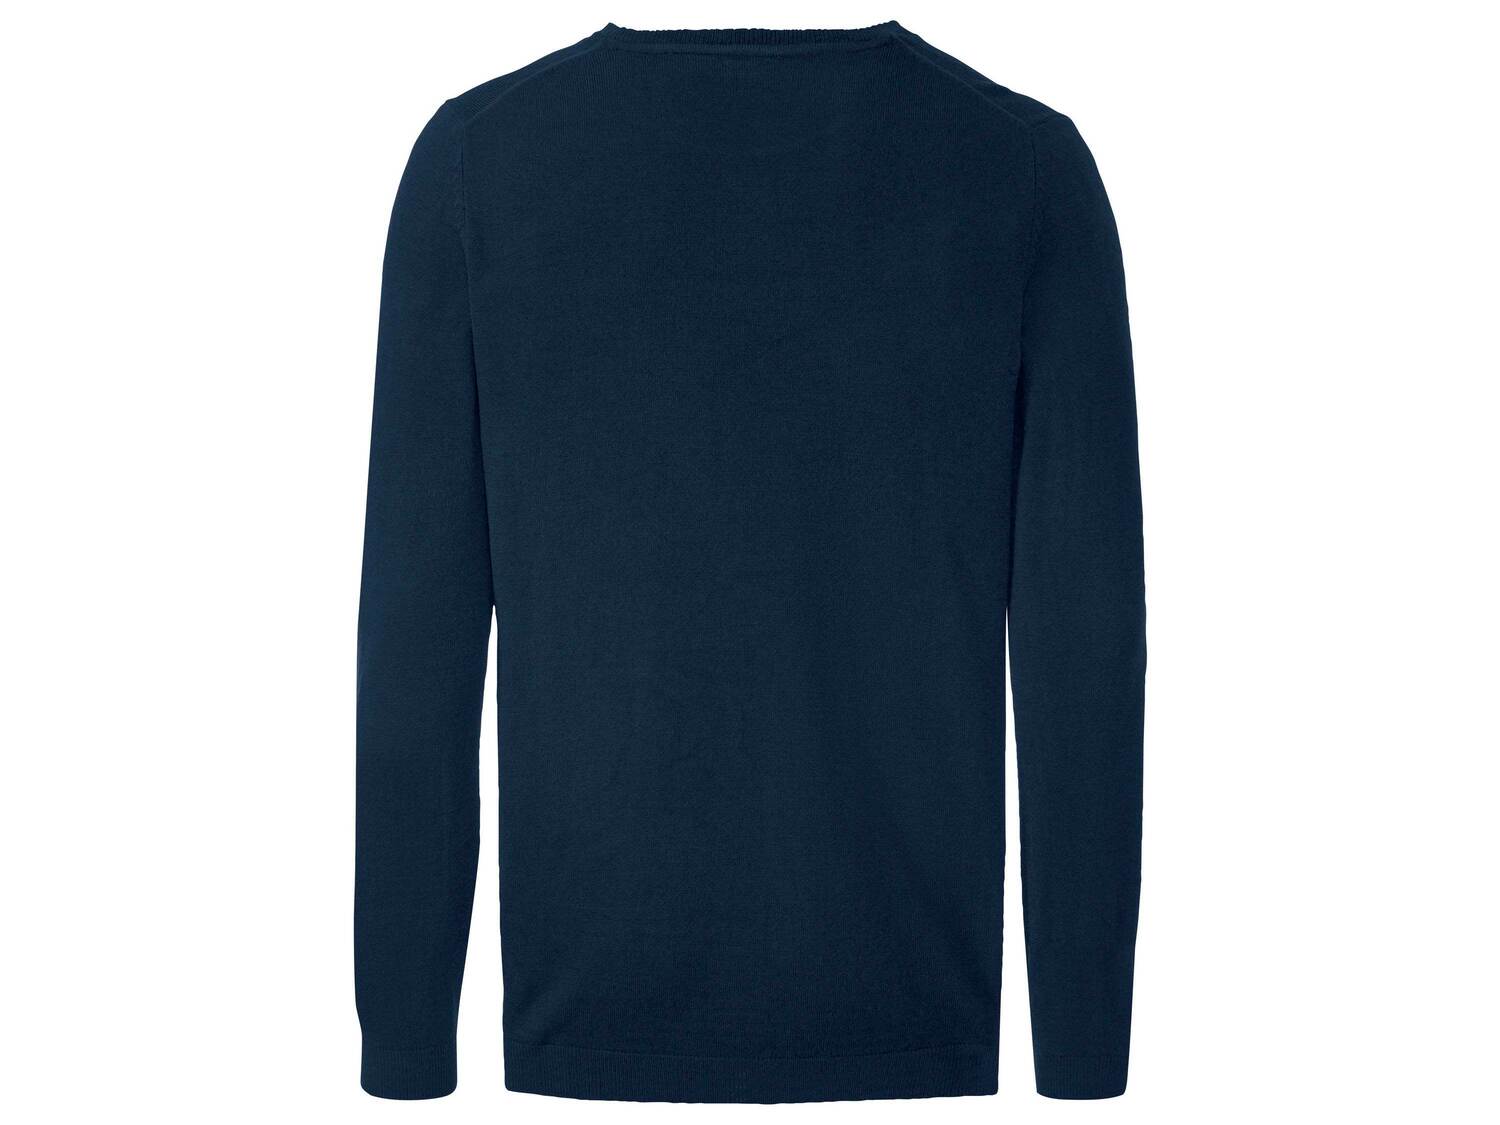 Sweter męski Livergy, cena 29,99 PLN 
- 100% poliakrylu
- rozmiary: M-XL
Dostępne ...